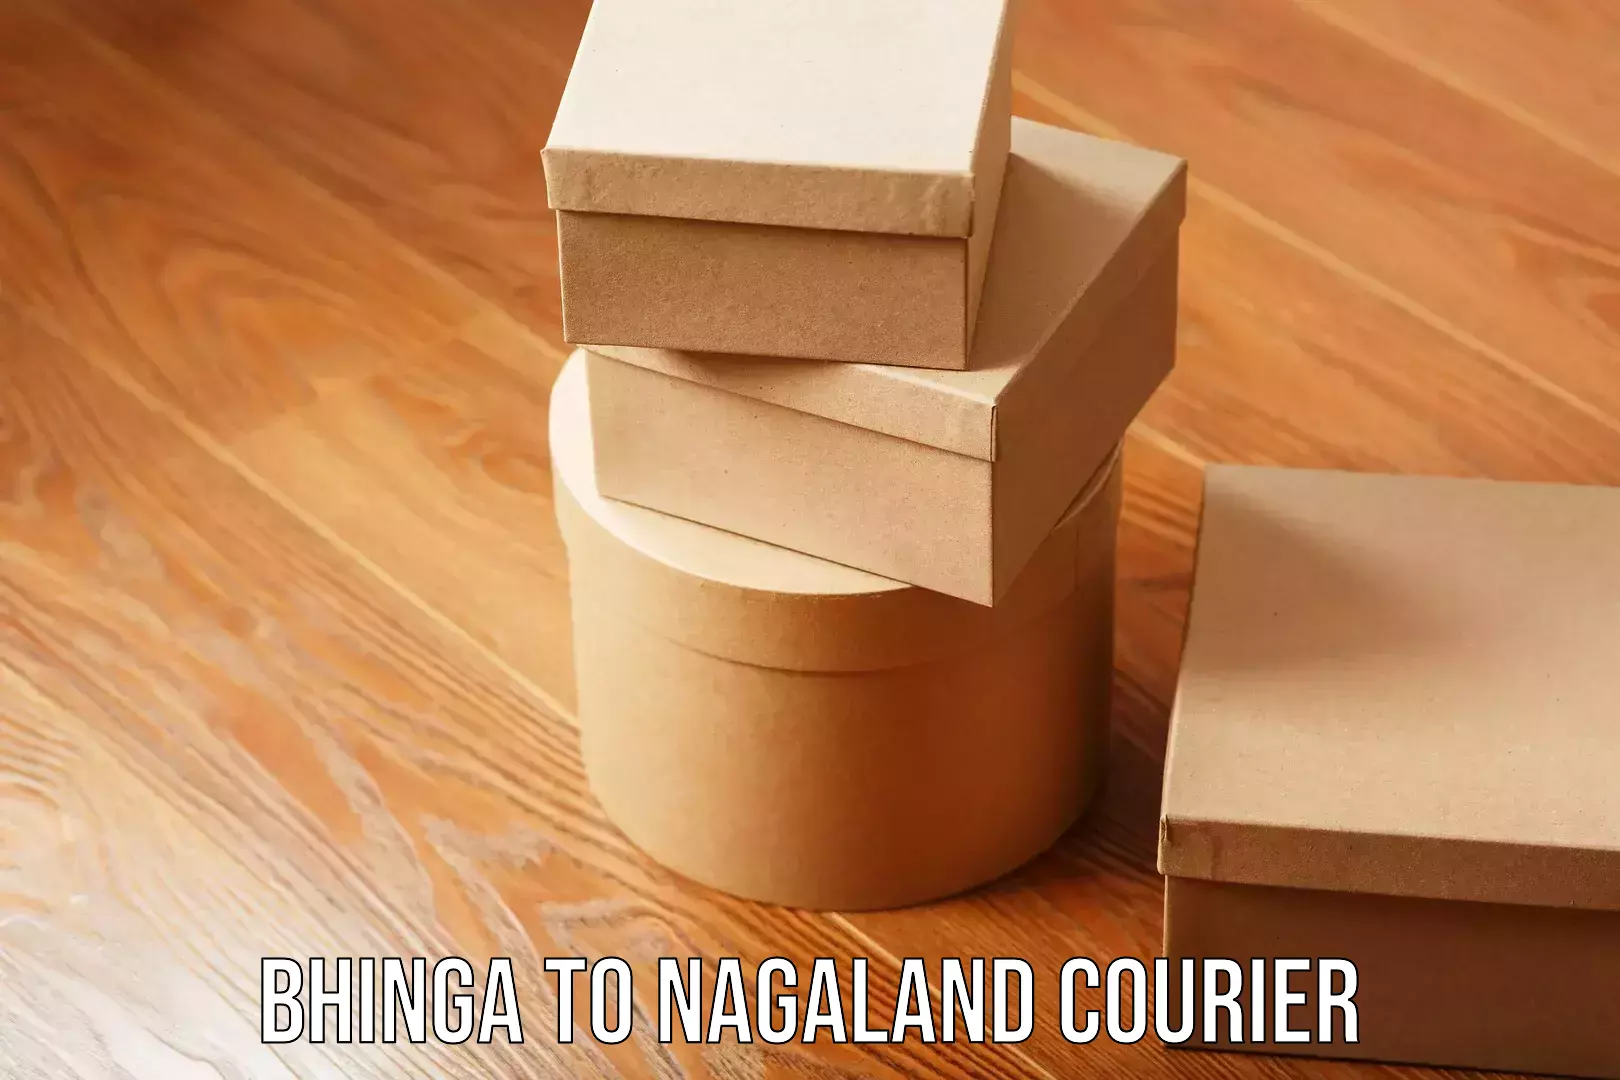 Premium courier solutions Bhinga to Nagaland